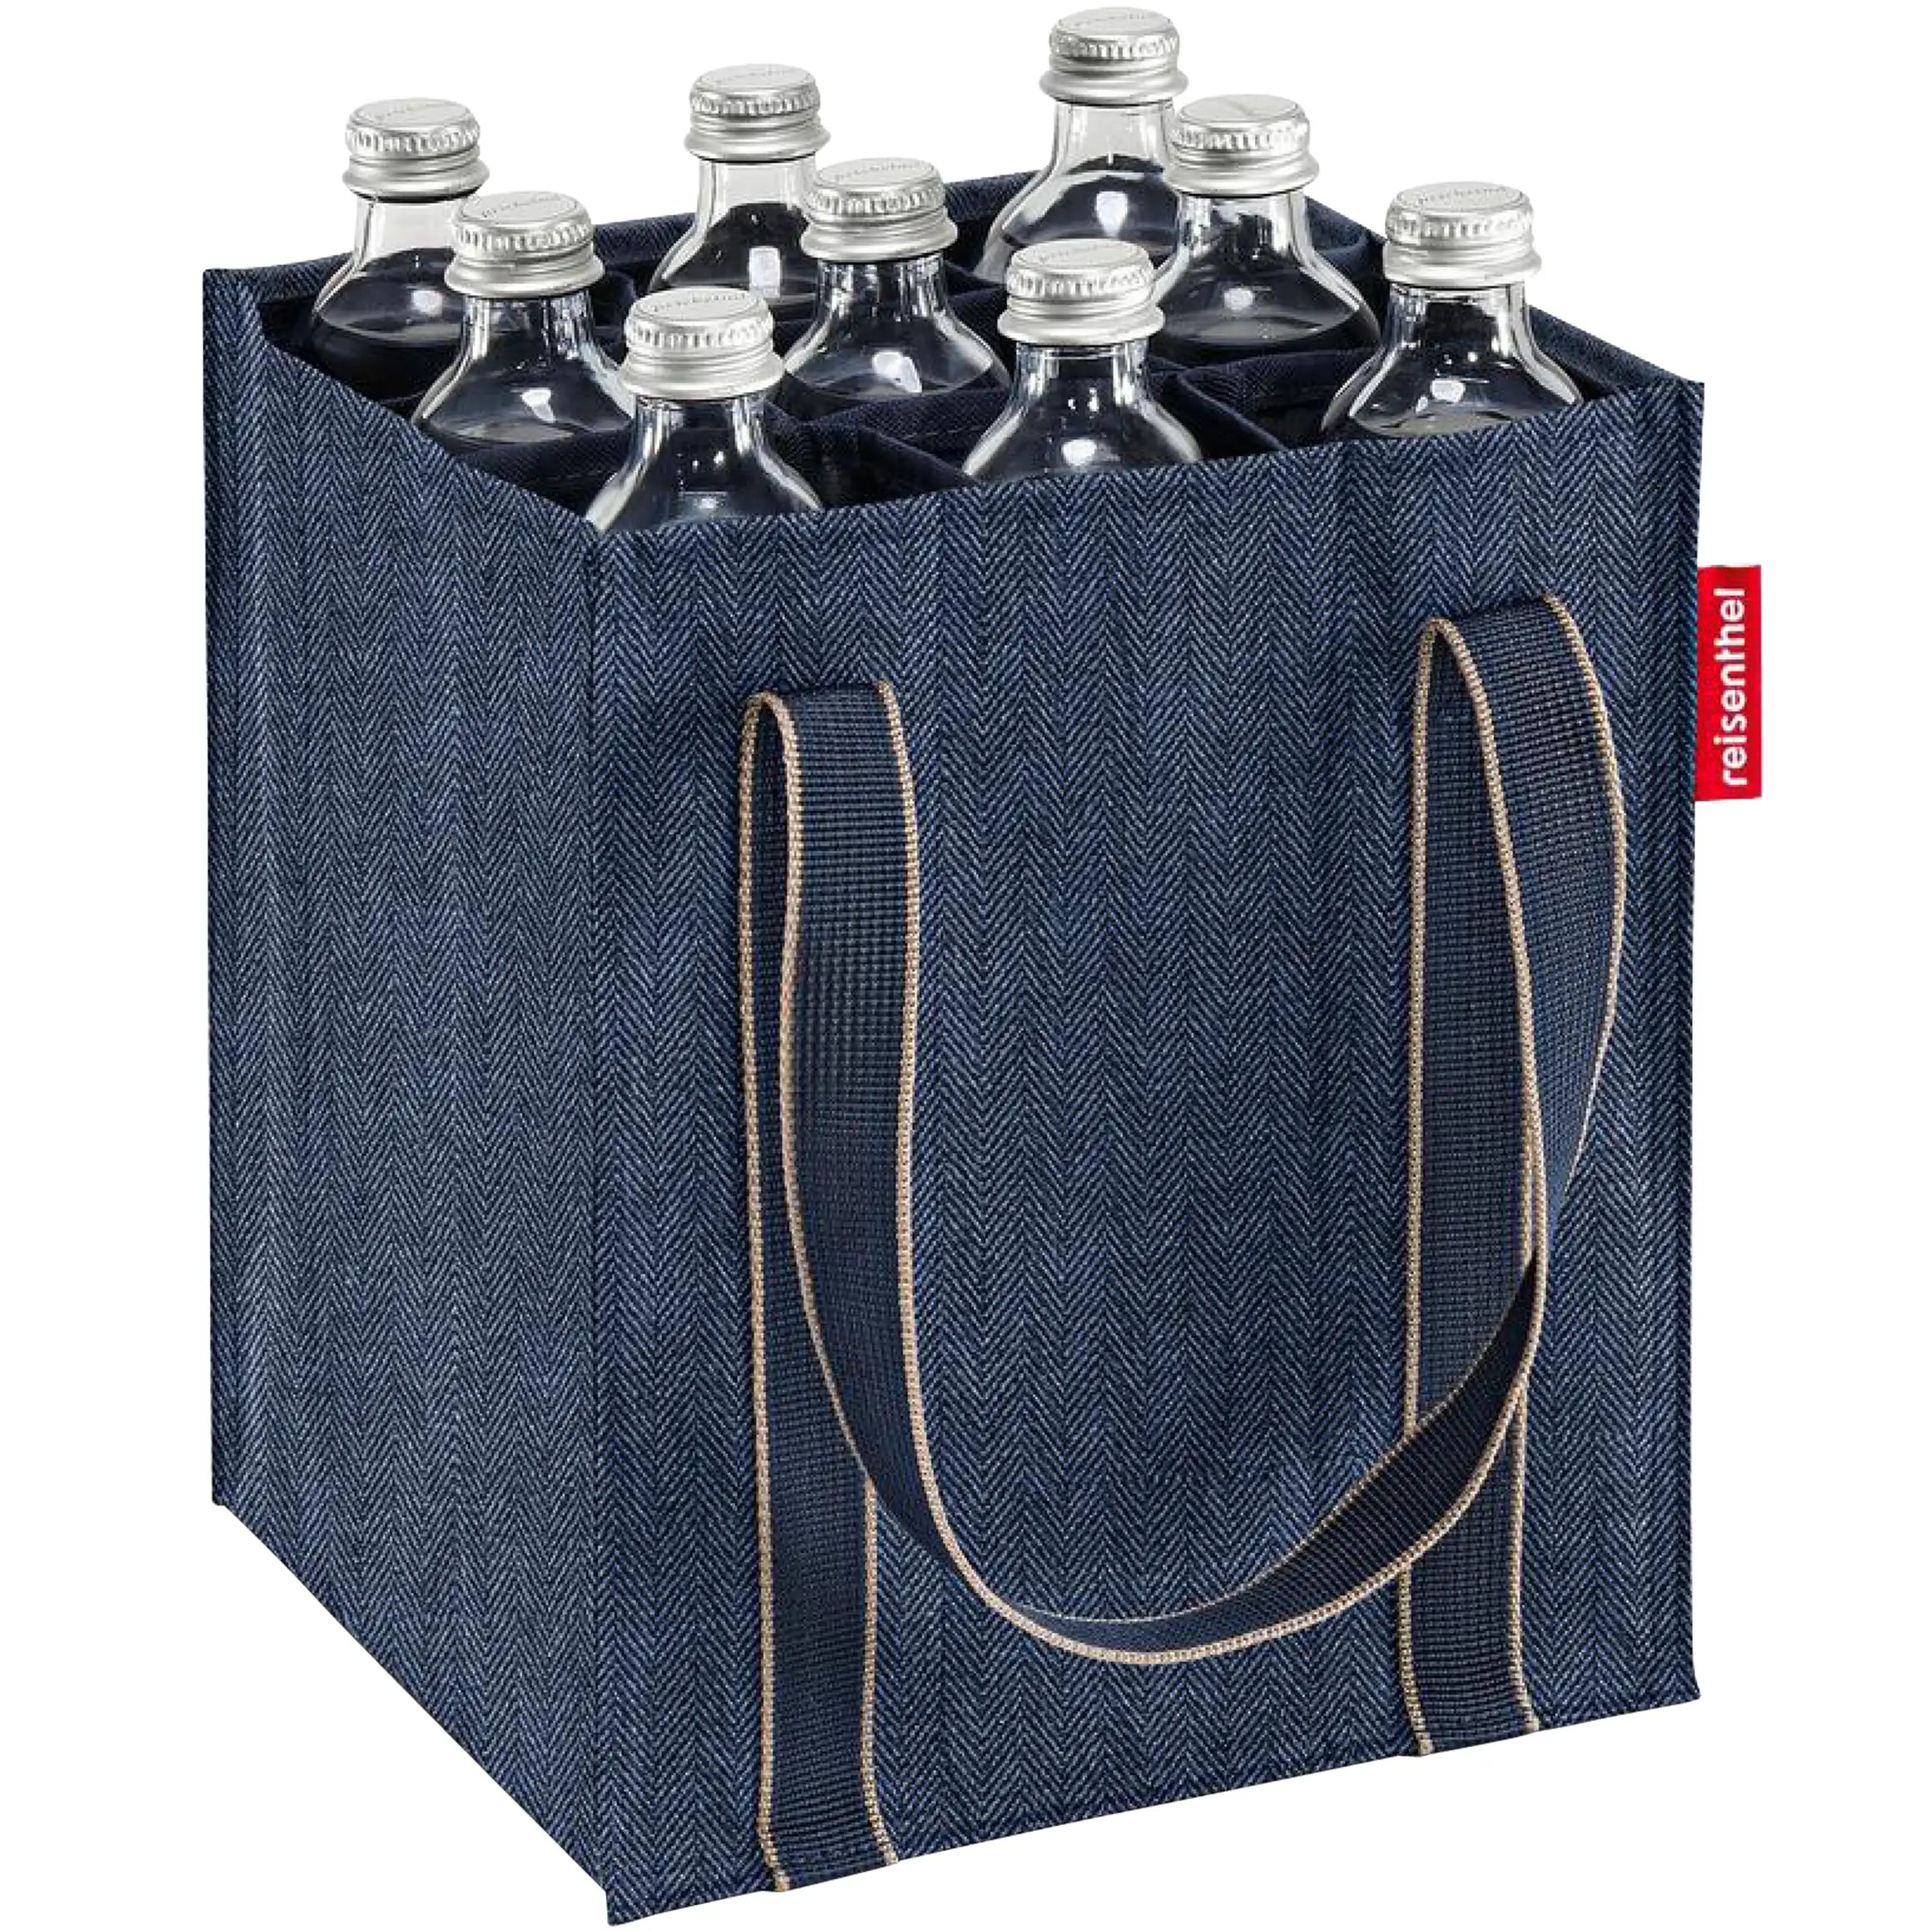 Reisenthel Shopping Bottlebag 28 cm - Herringbone Dark Blue